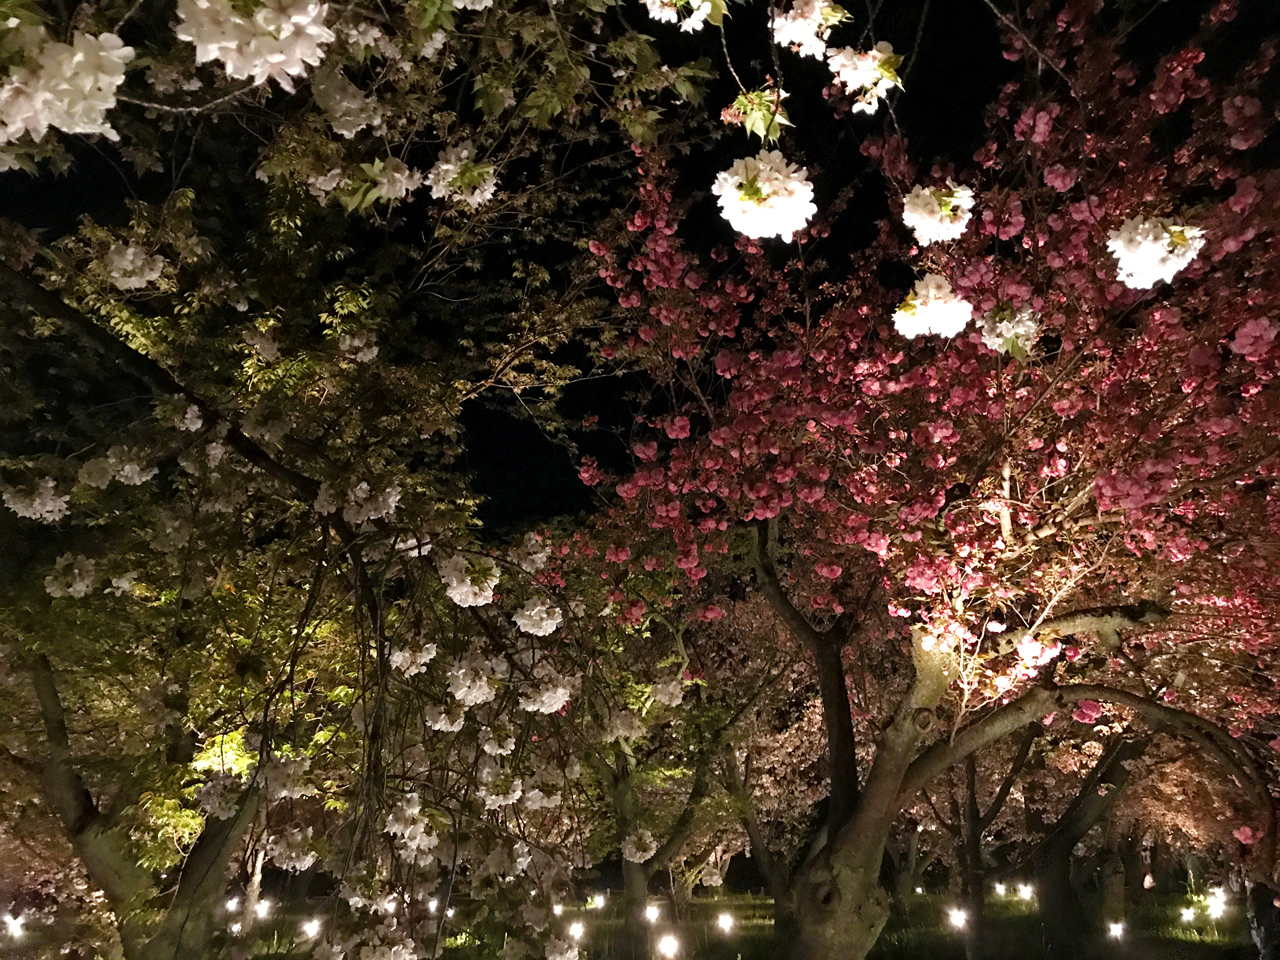 二条城の夜桜